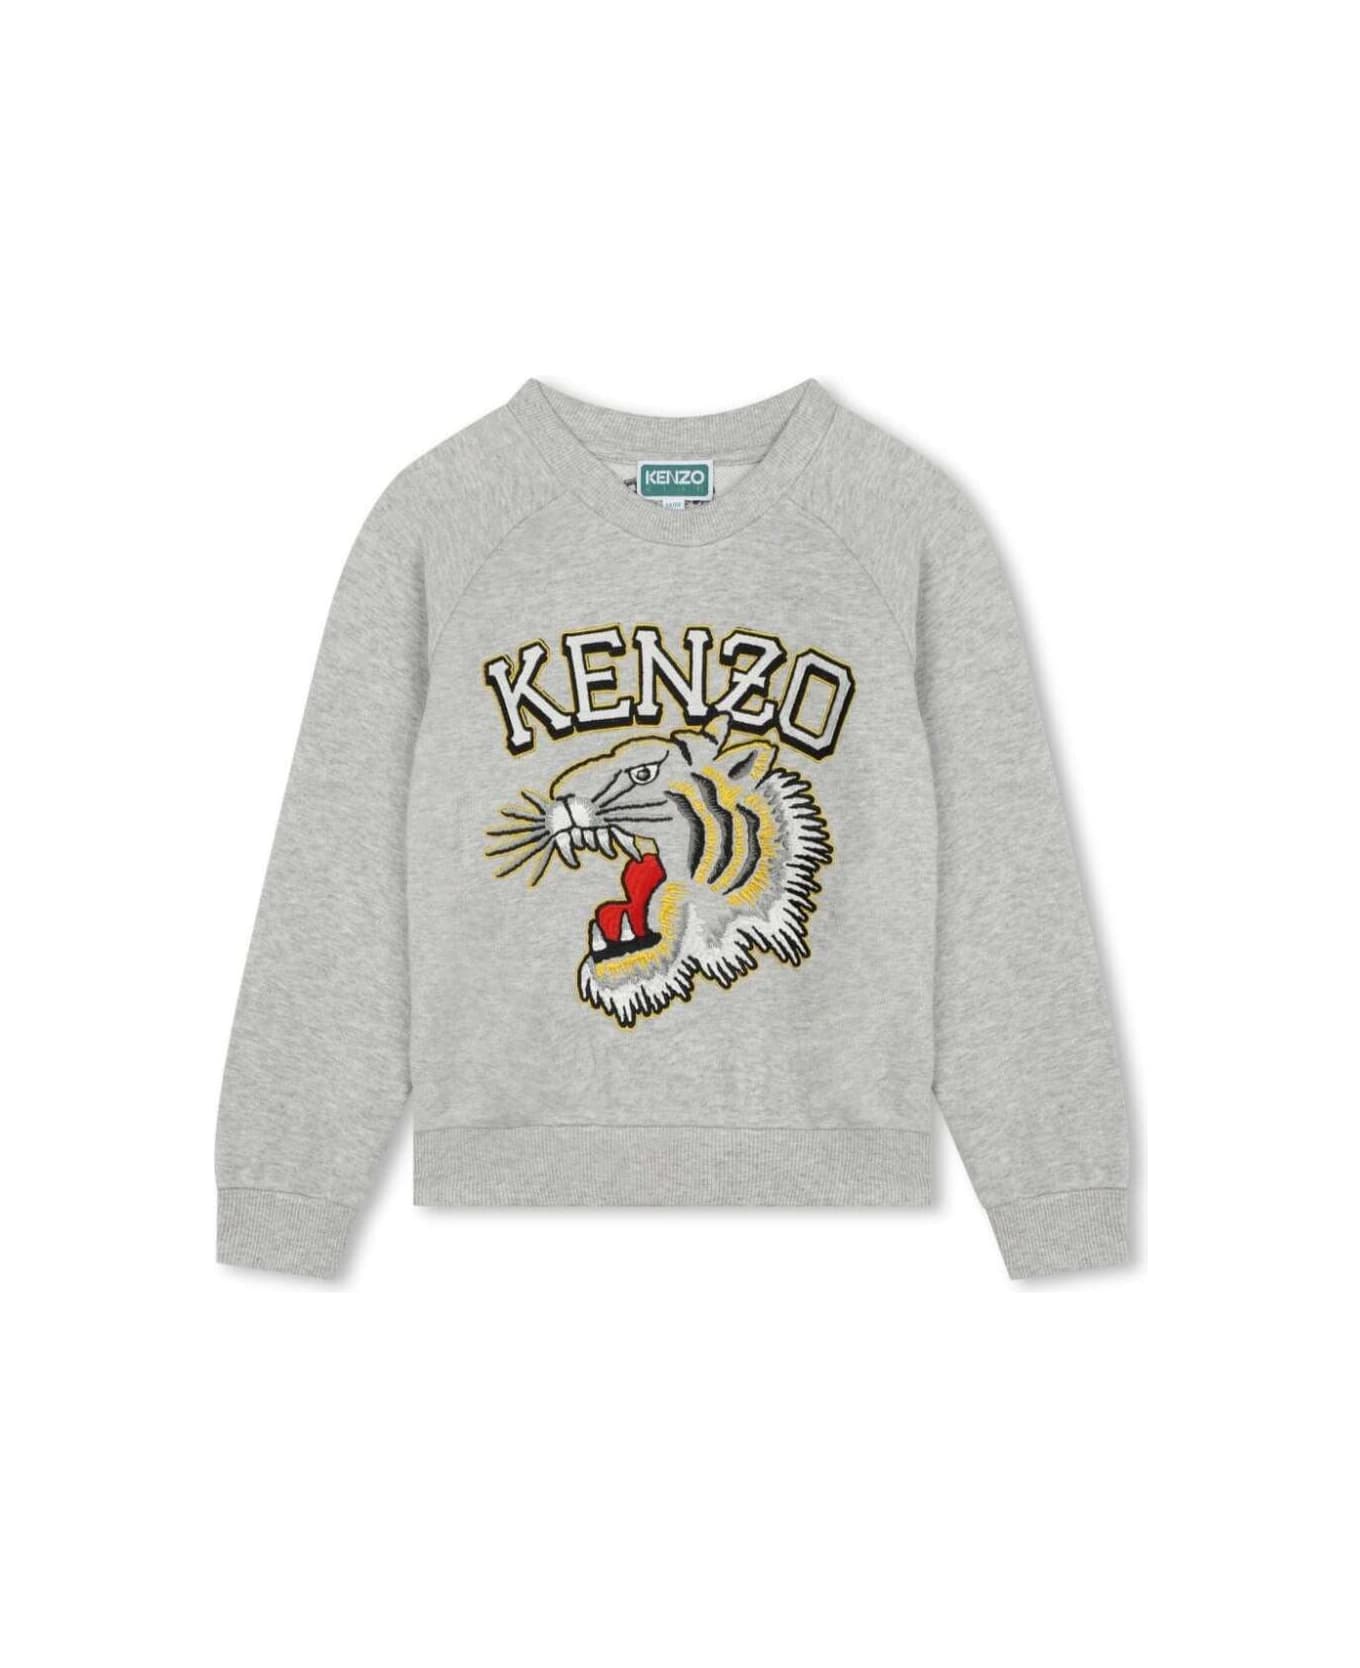 Kenzo Kids K60323a47 - Grigio